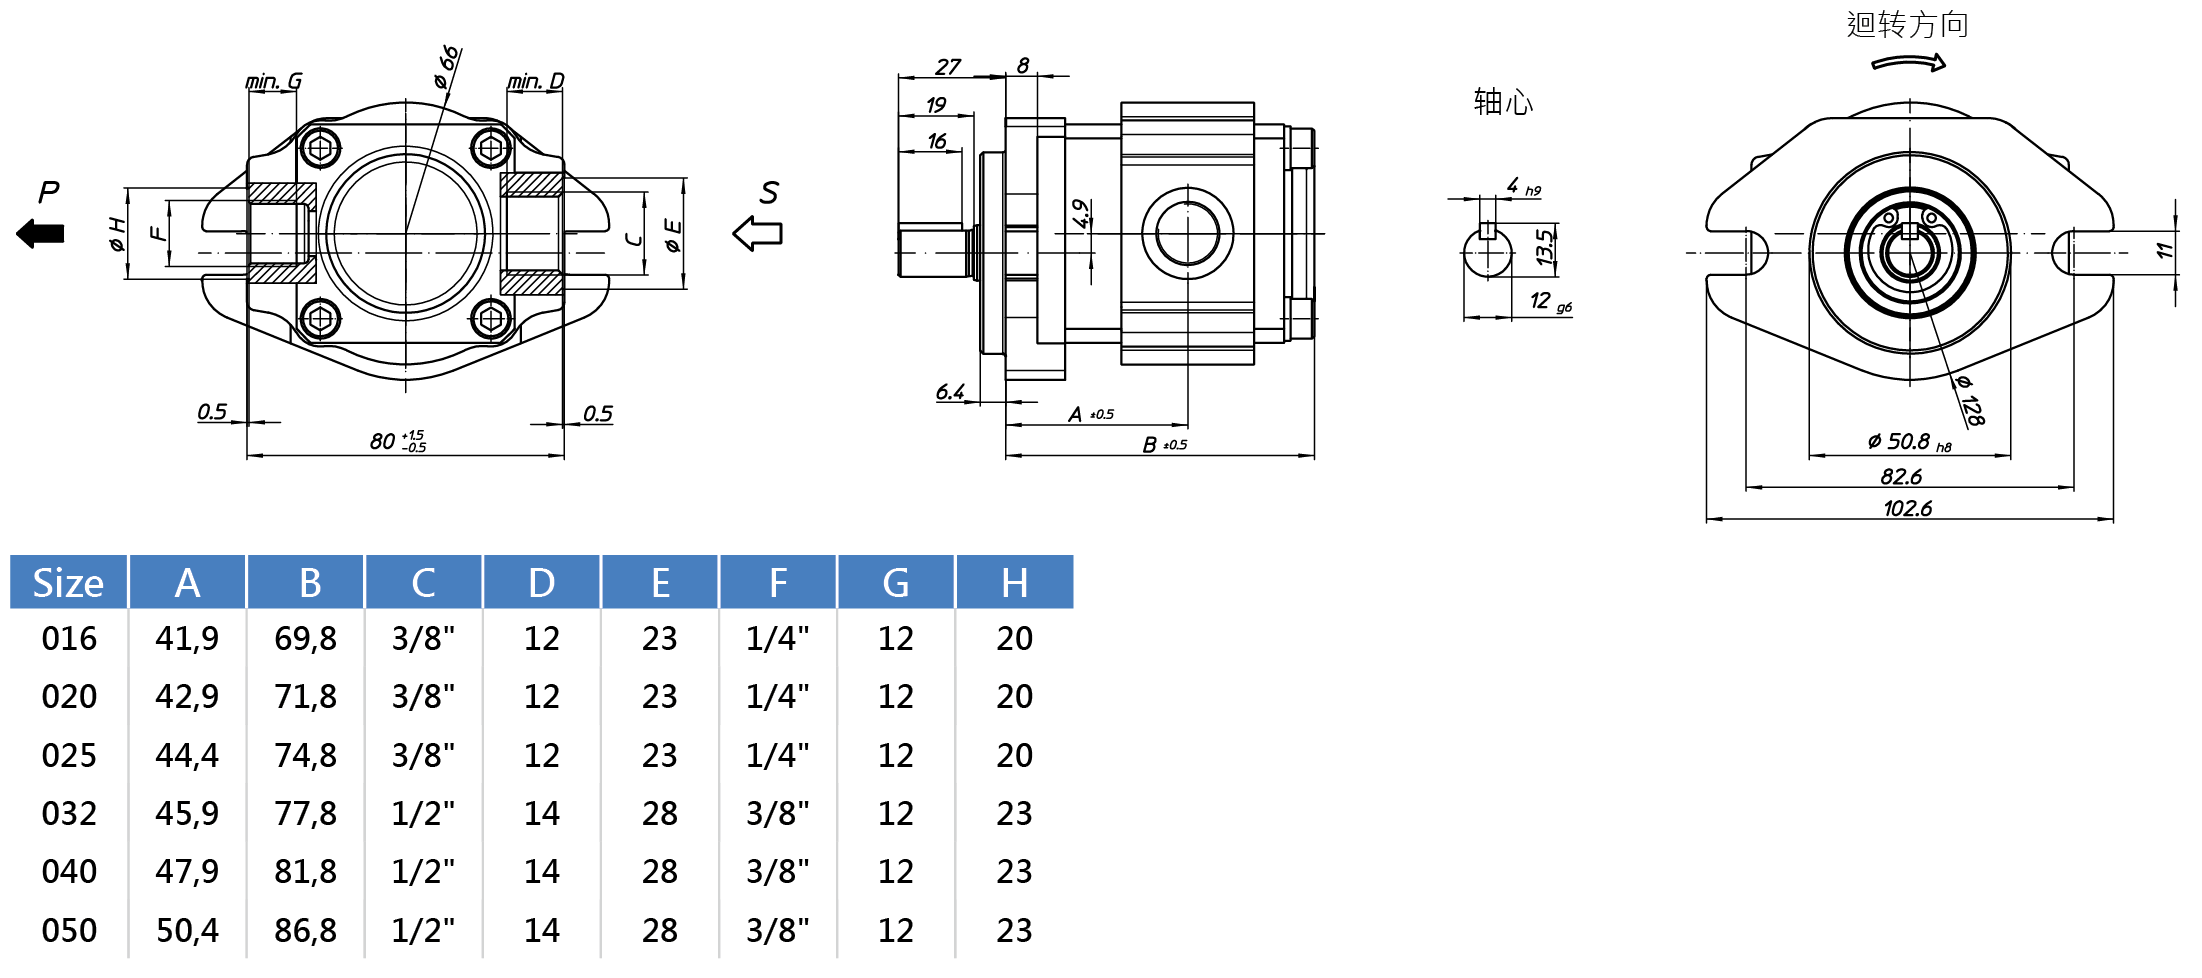 Eckerle内啮合齿轮泵EIPS-RA01-1X尺寸图